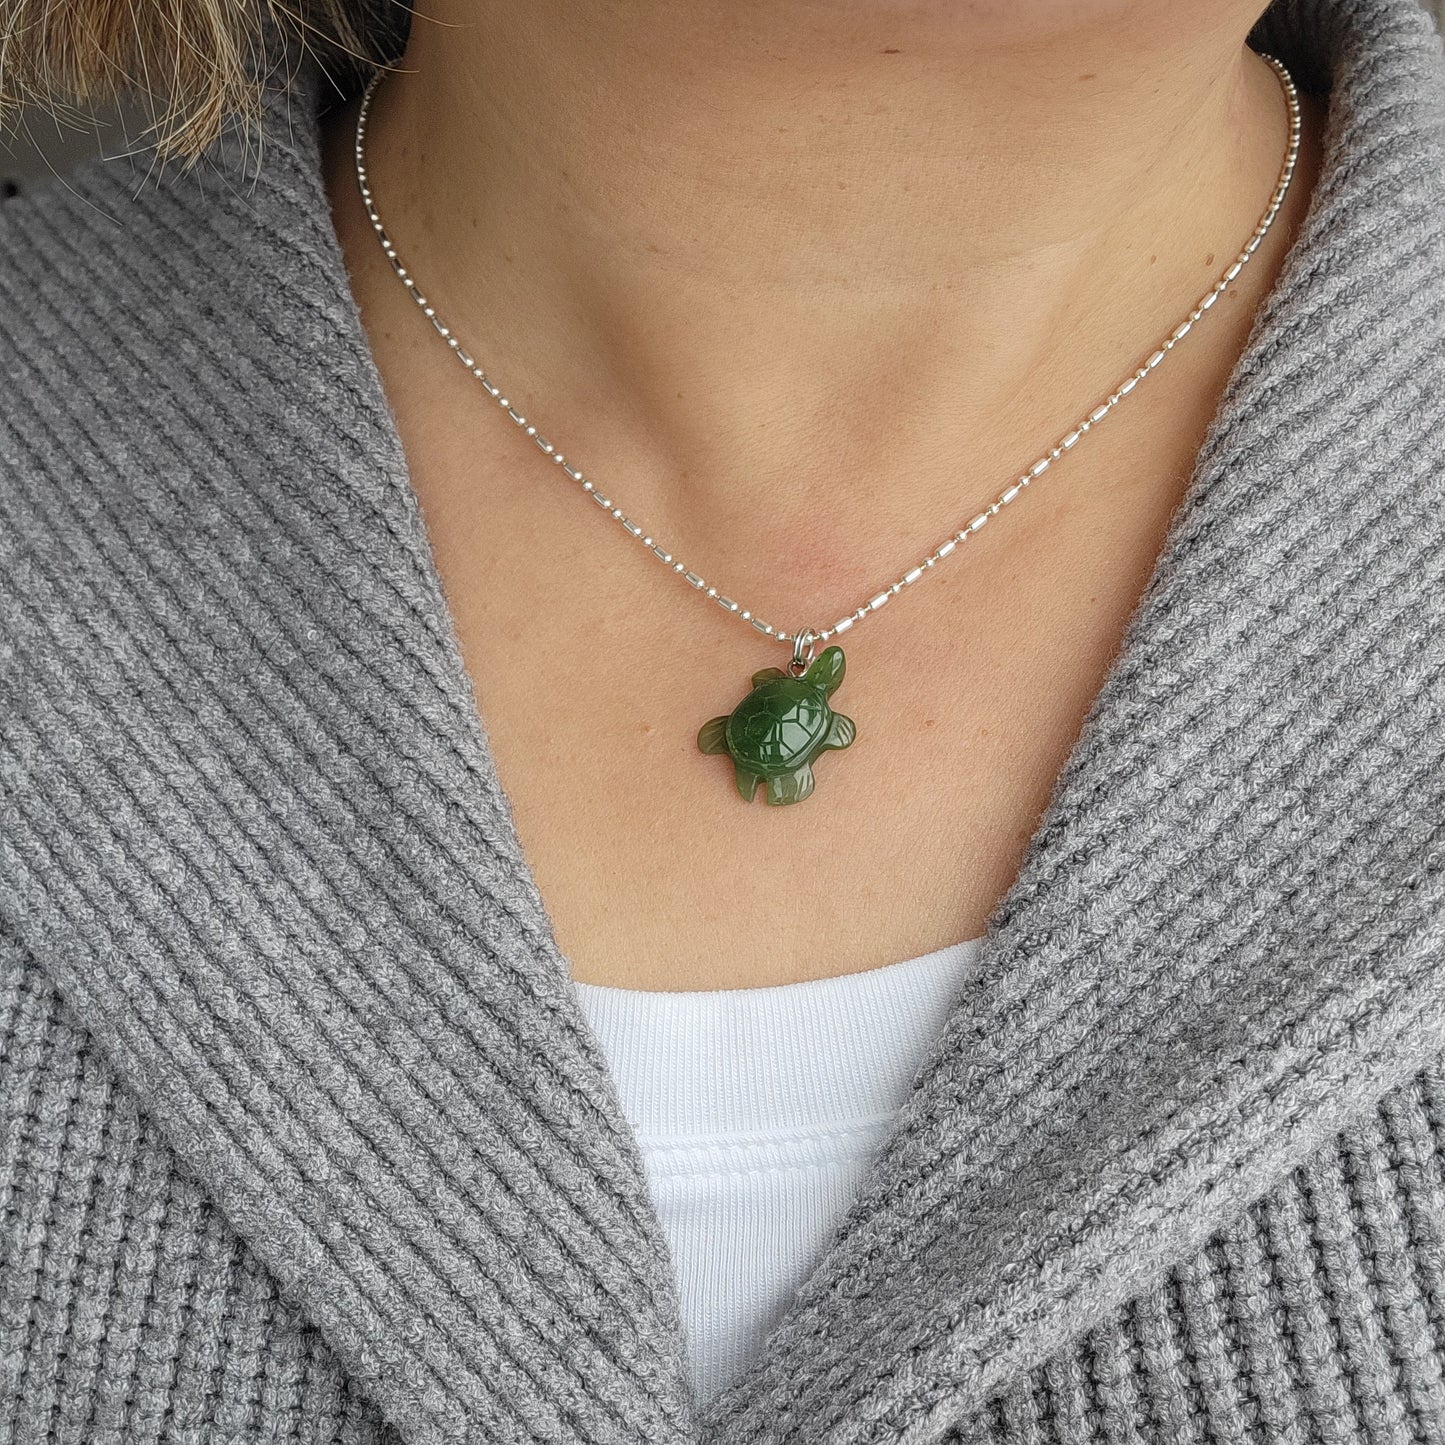 jade turtle pendant necklace